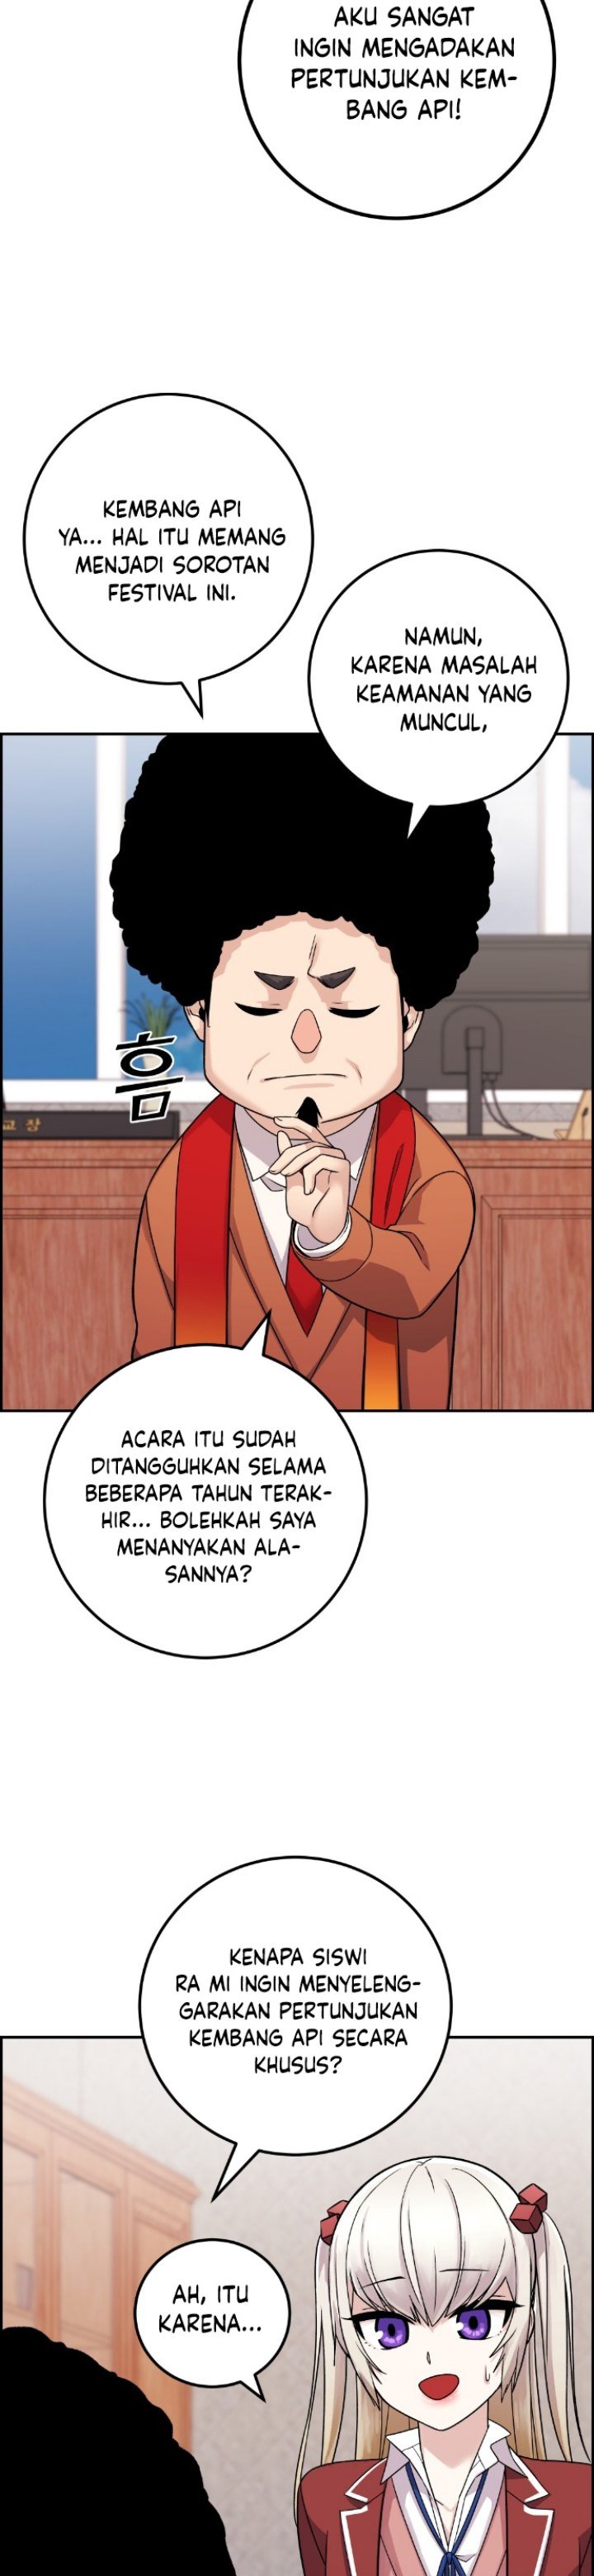 Webtoon Character Na Kang Lim Chapter 35 - 421